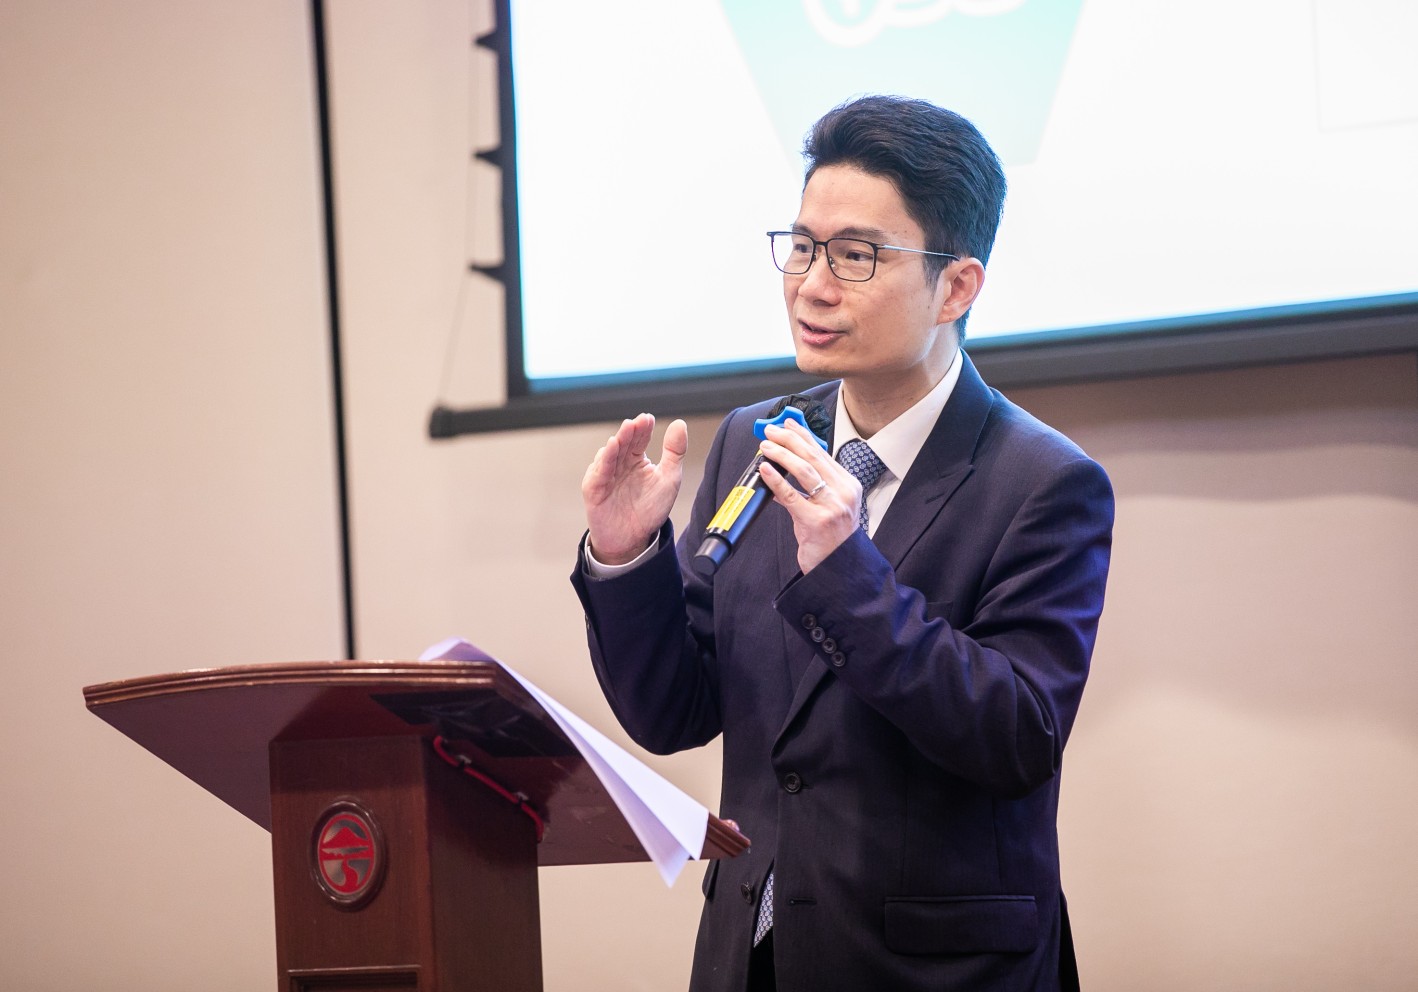 财经事务及库务局副局长陈浩濂与学生分享香港金融最新发展。